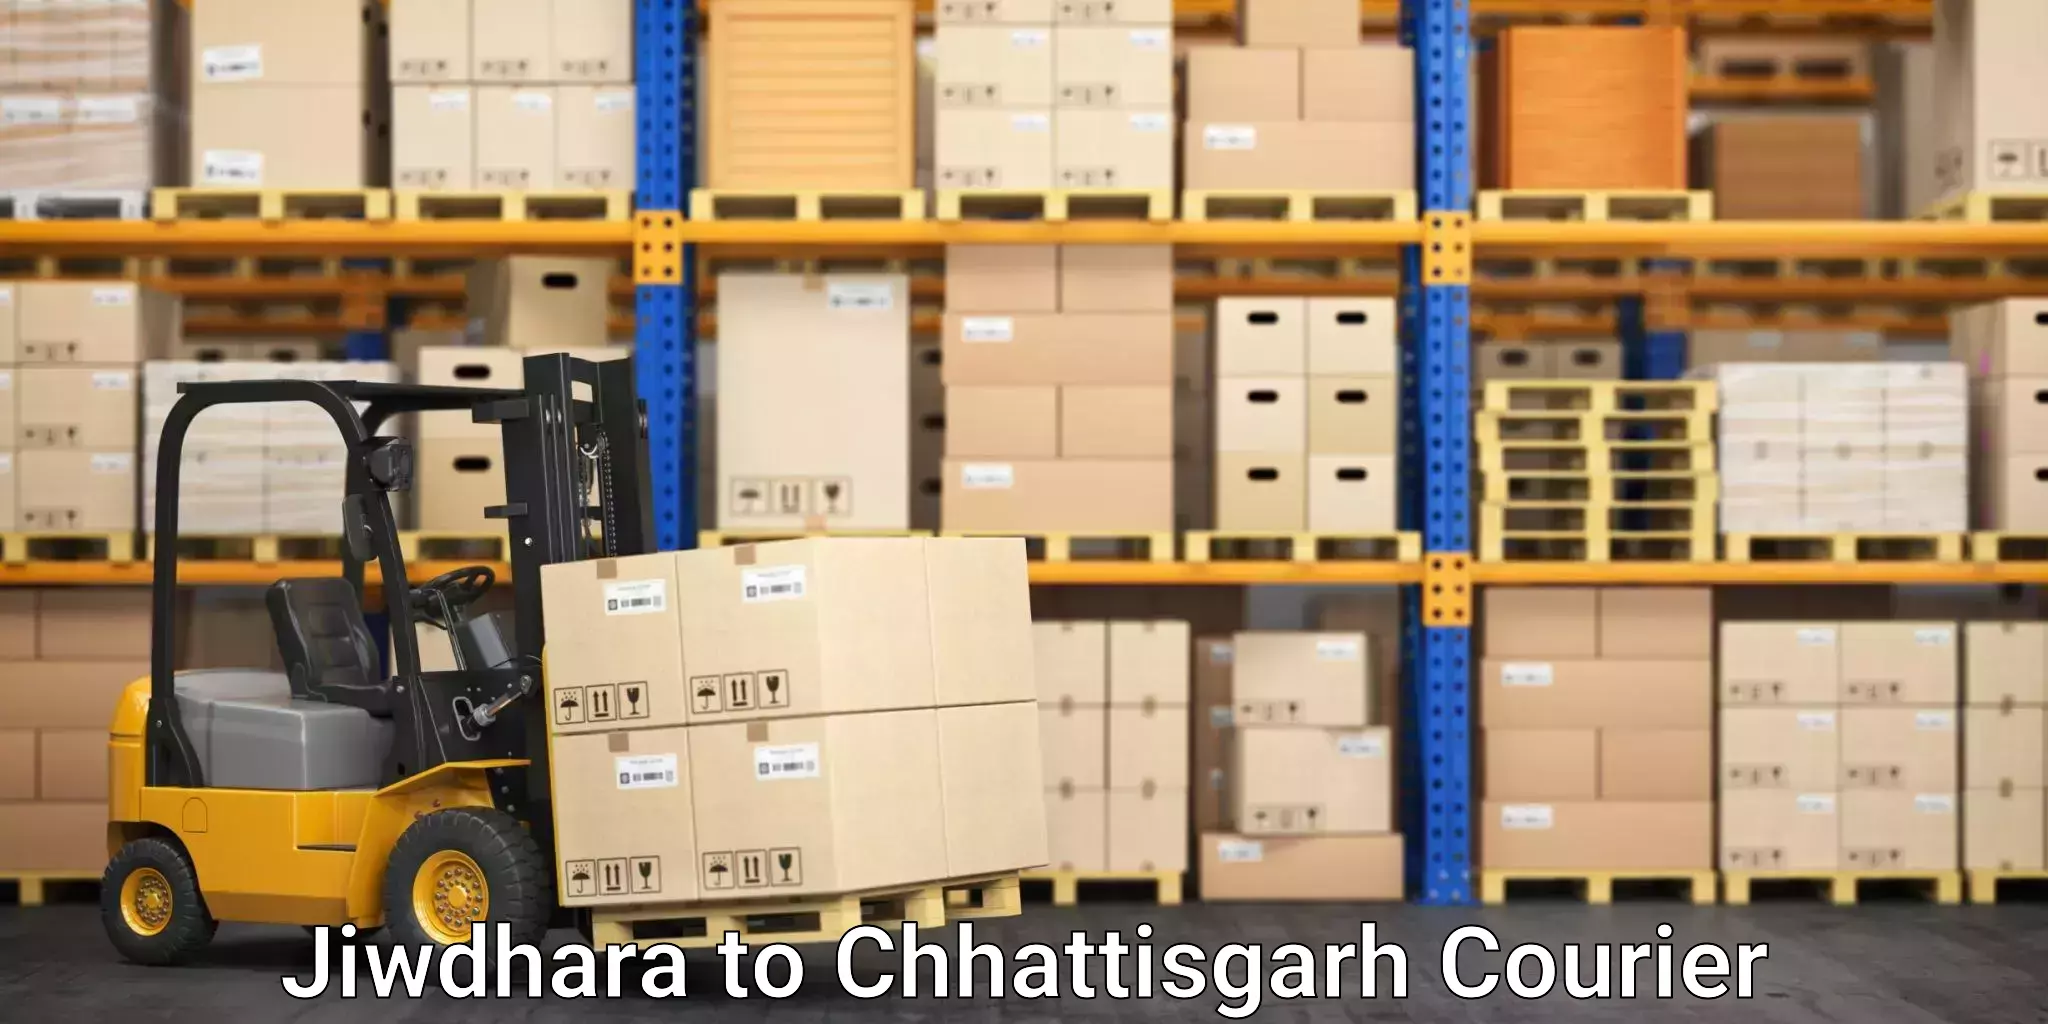 High-quality moving services Jiwdhara to Chhattisgarh